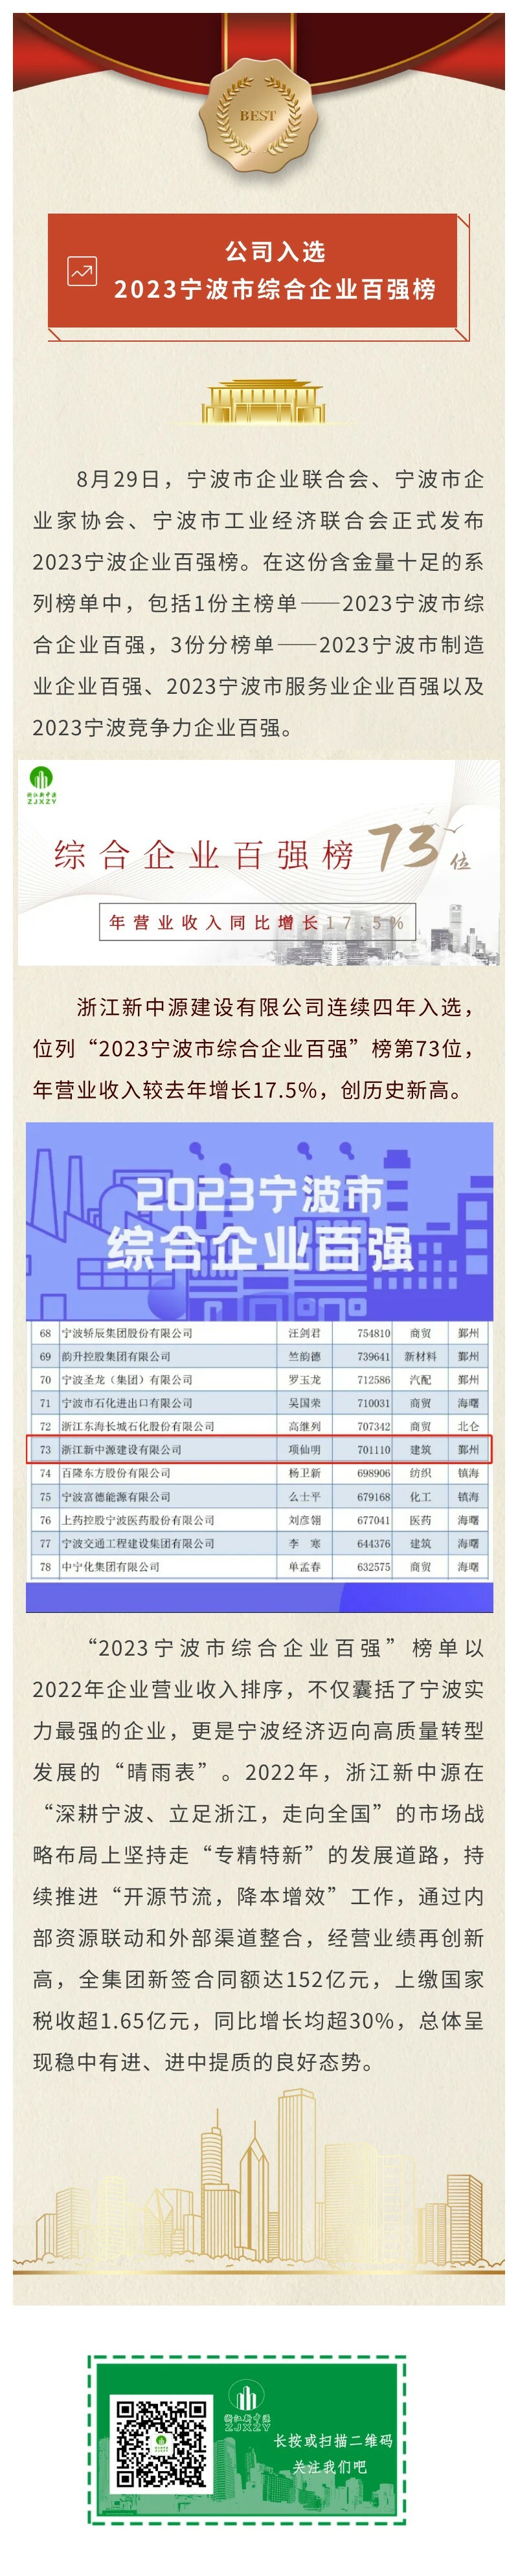 公司入选2023宁波市综合企业百强长图.jpg